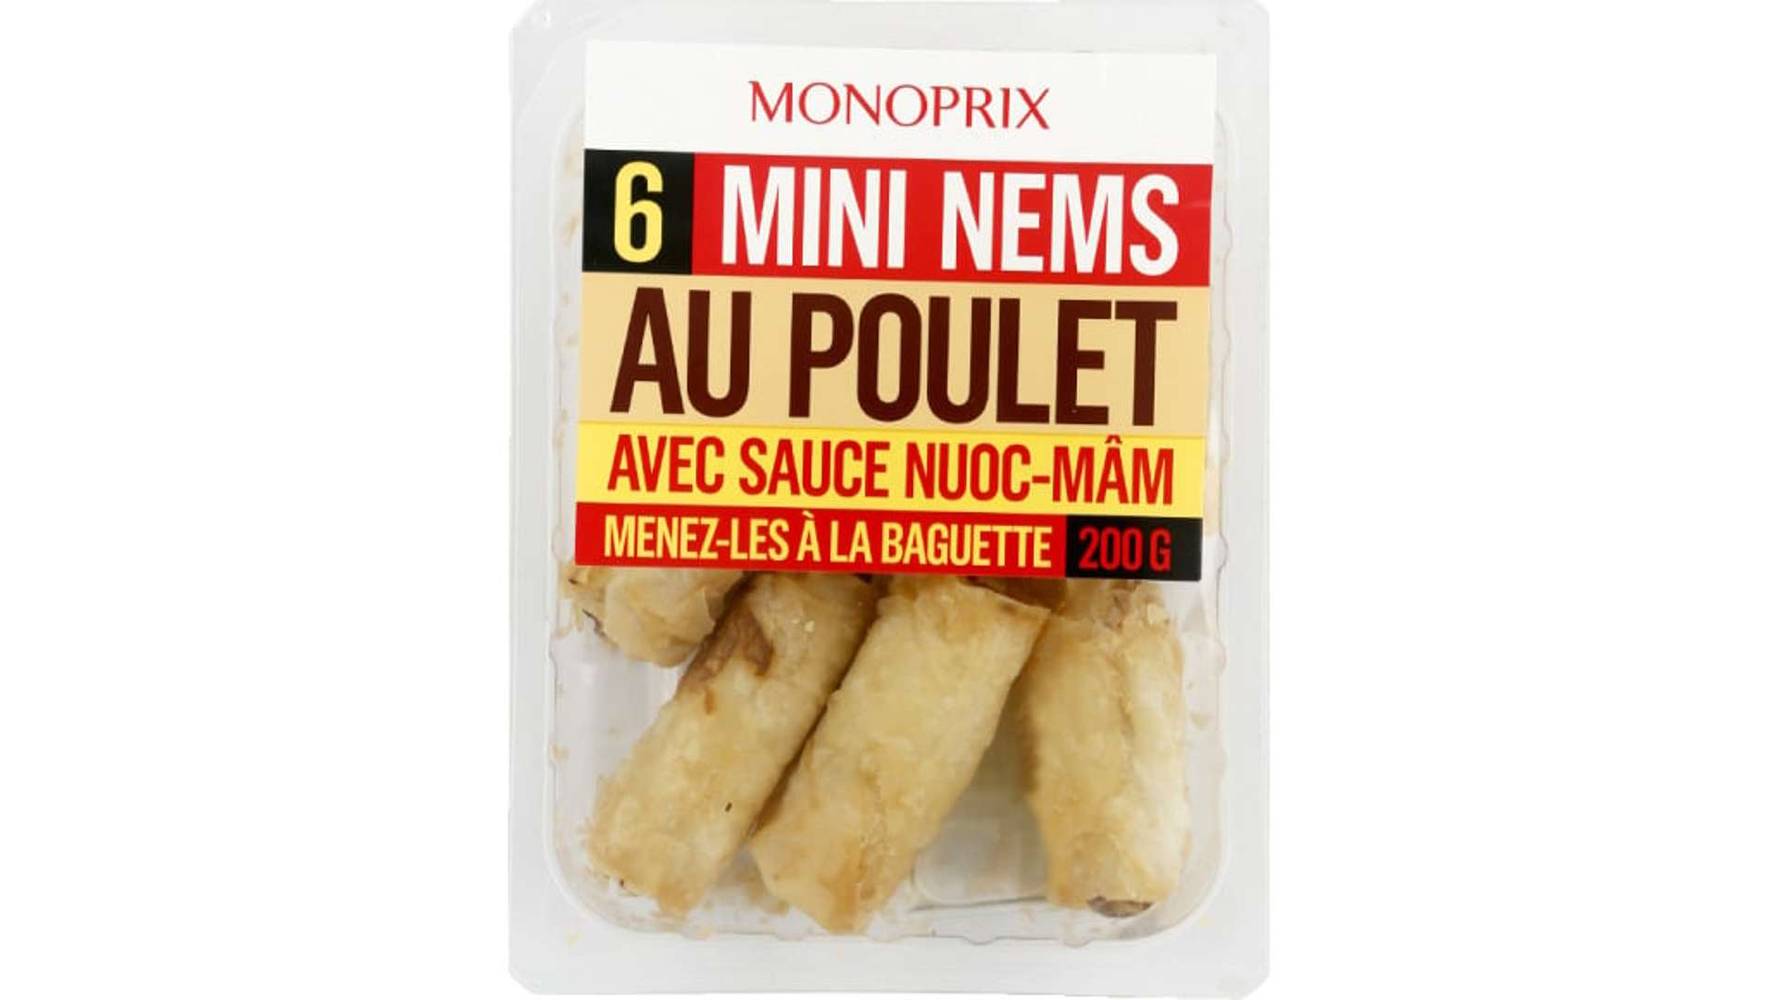 Monoprix Mini nems au poulet avec sauce nuoc-mâm La barquette de 200 g